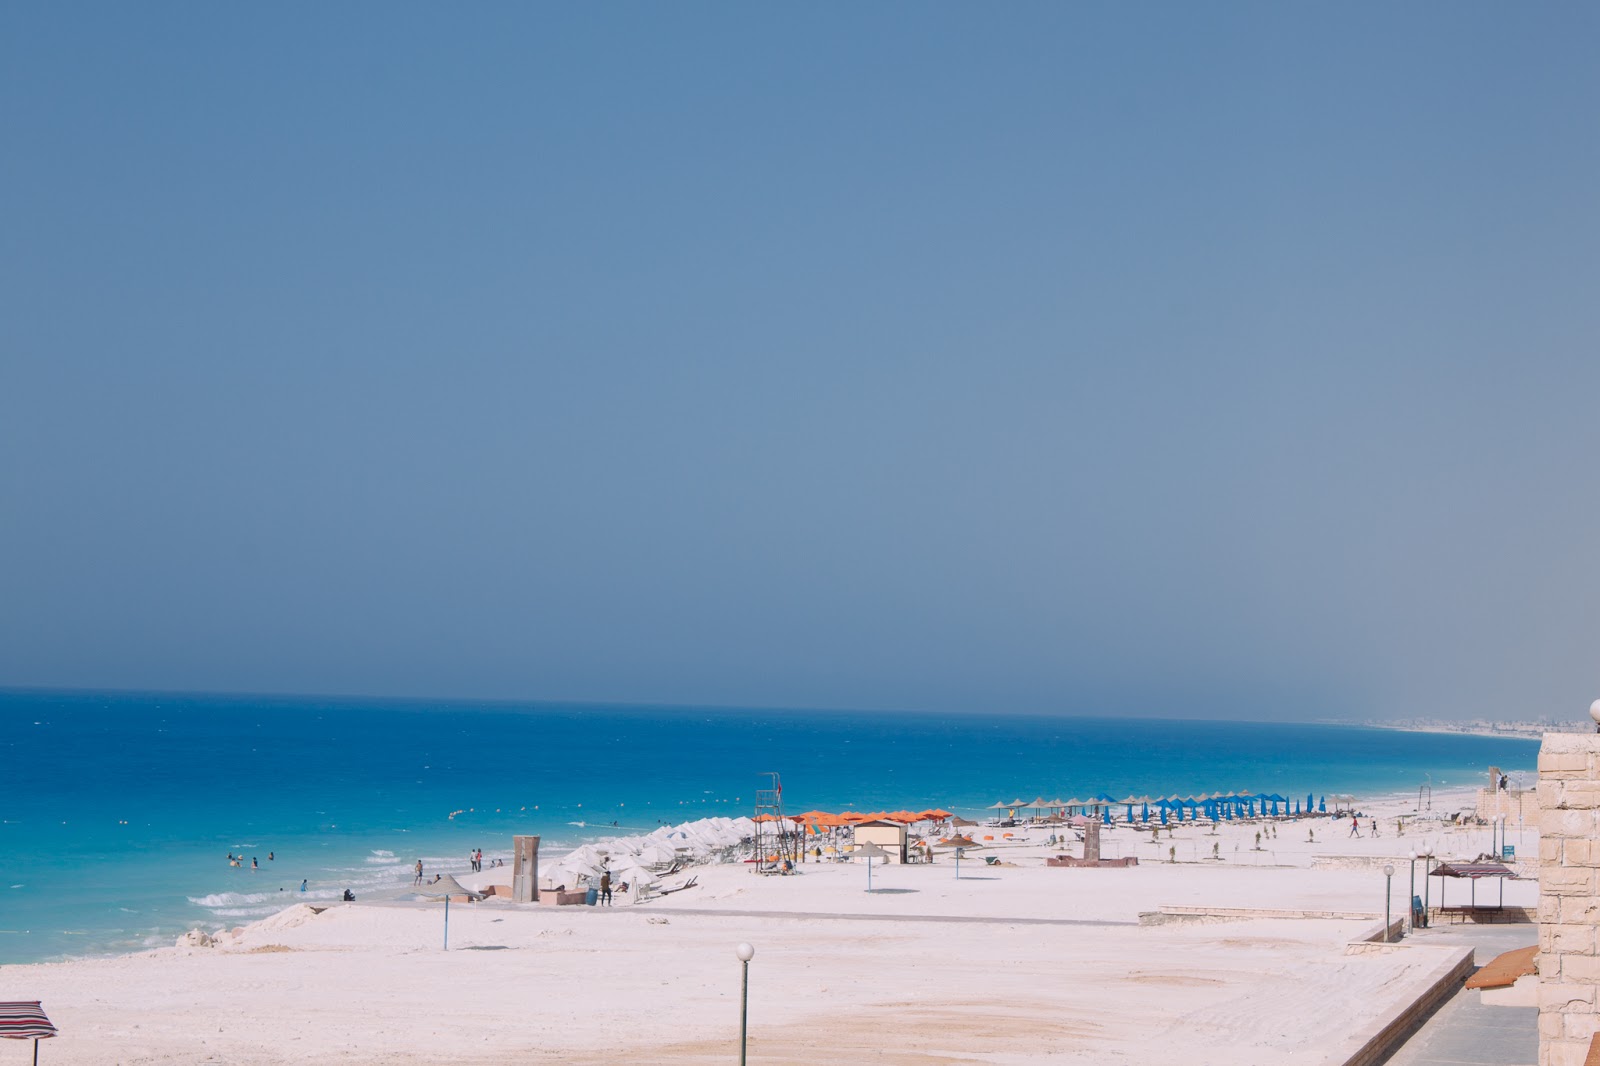 Assiut University Beach'in fotoğrafı turkuaz saf su yüzey ile